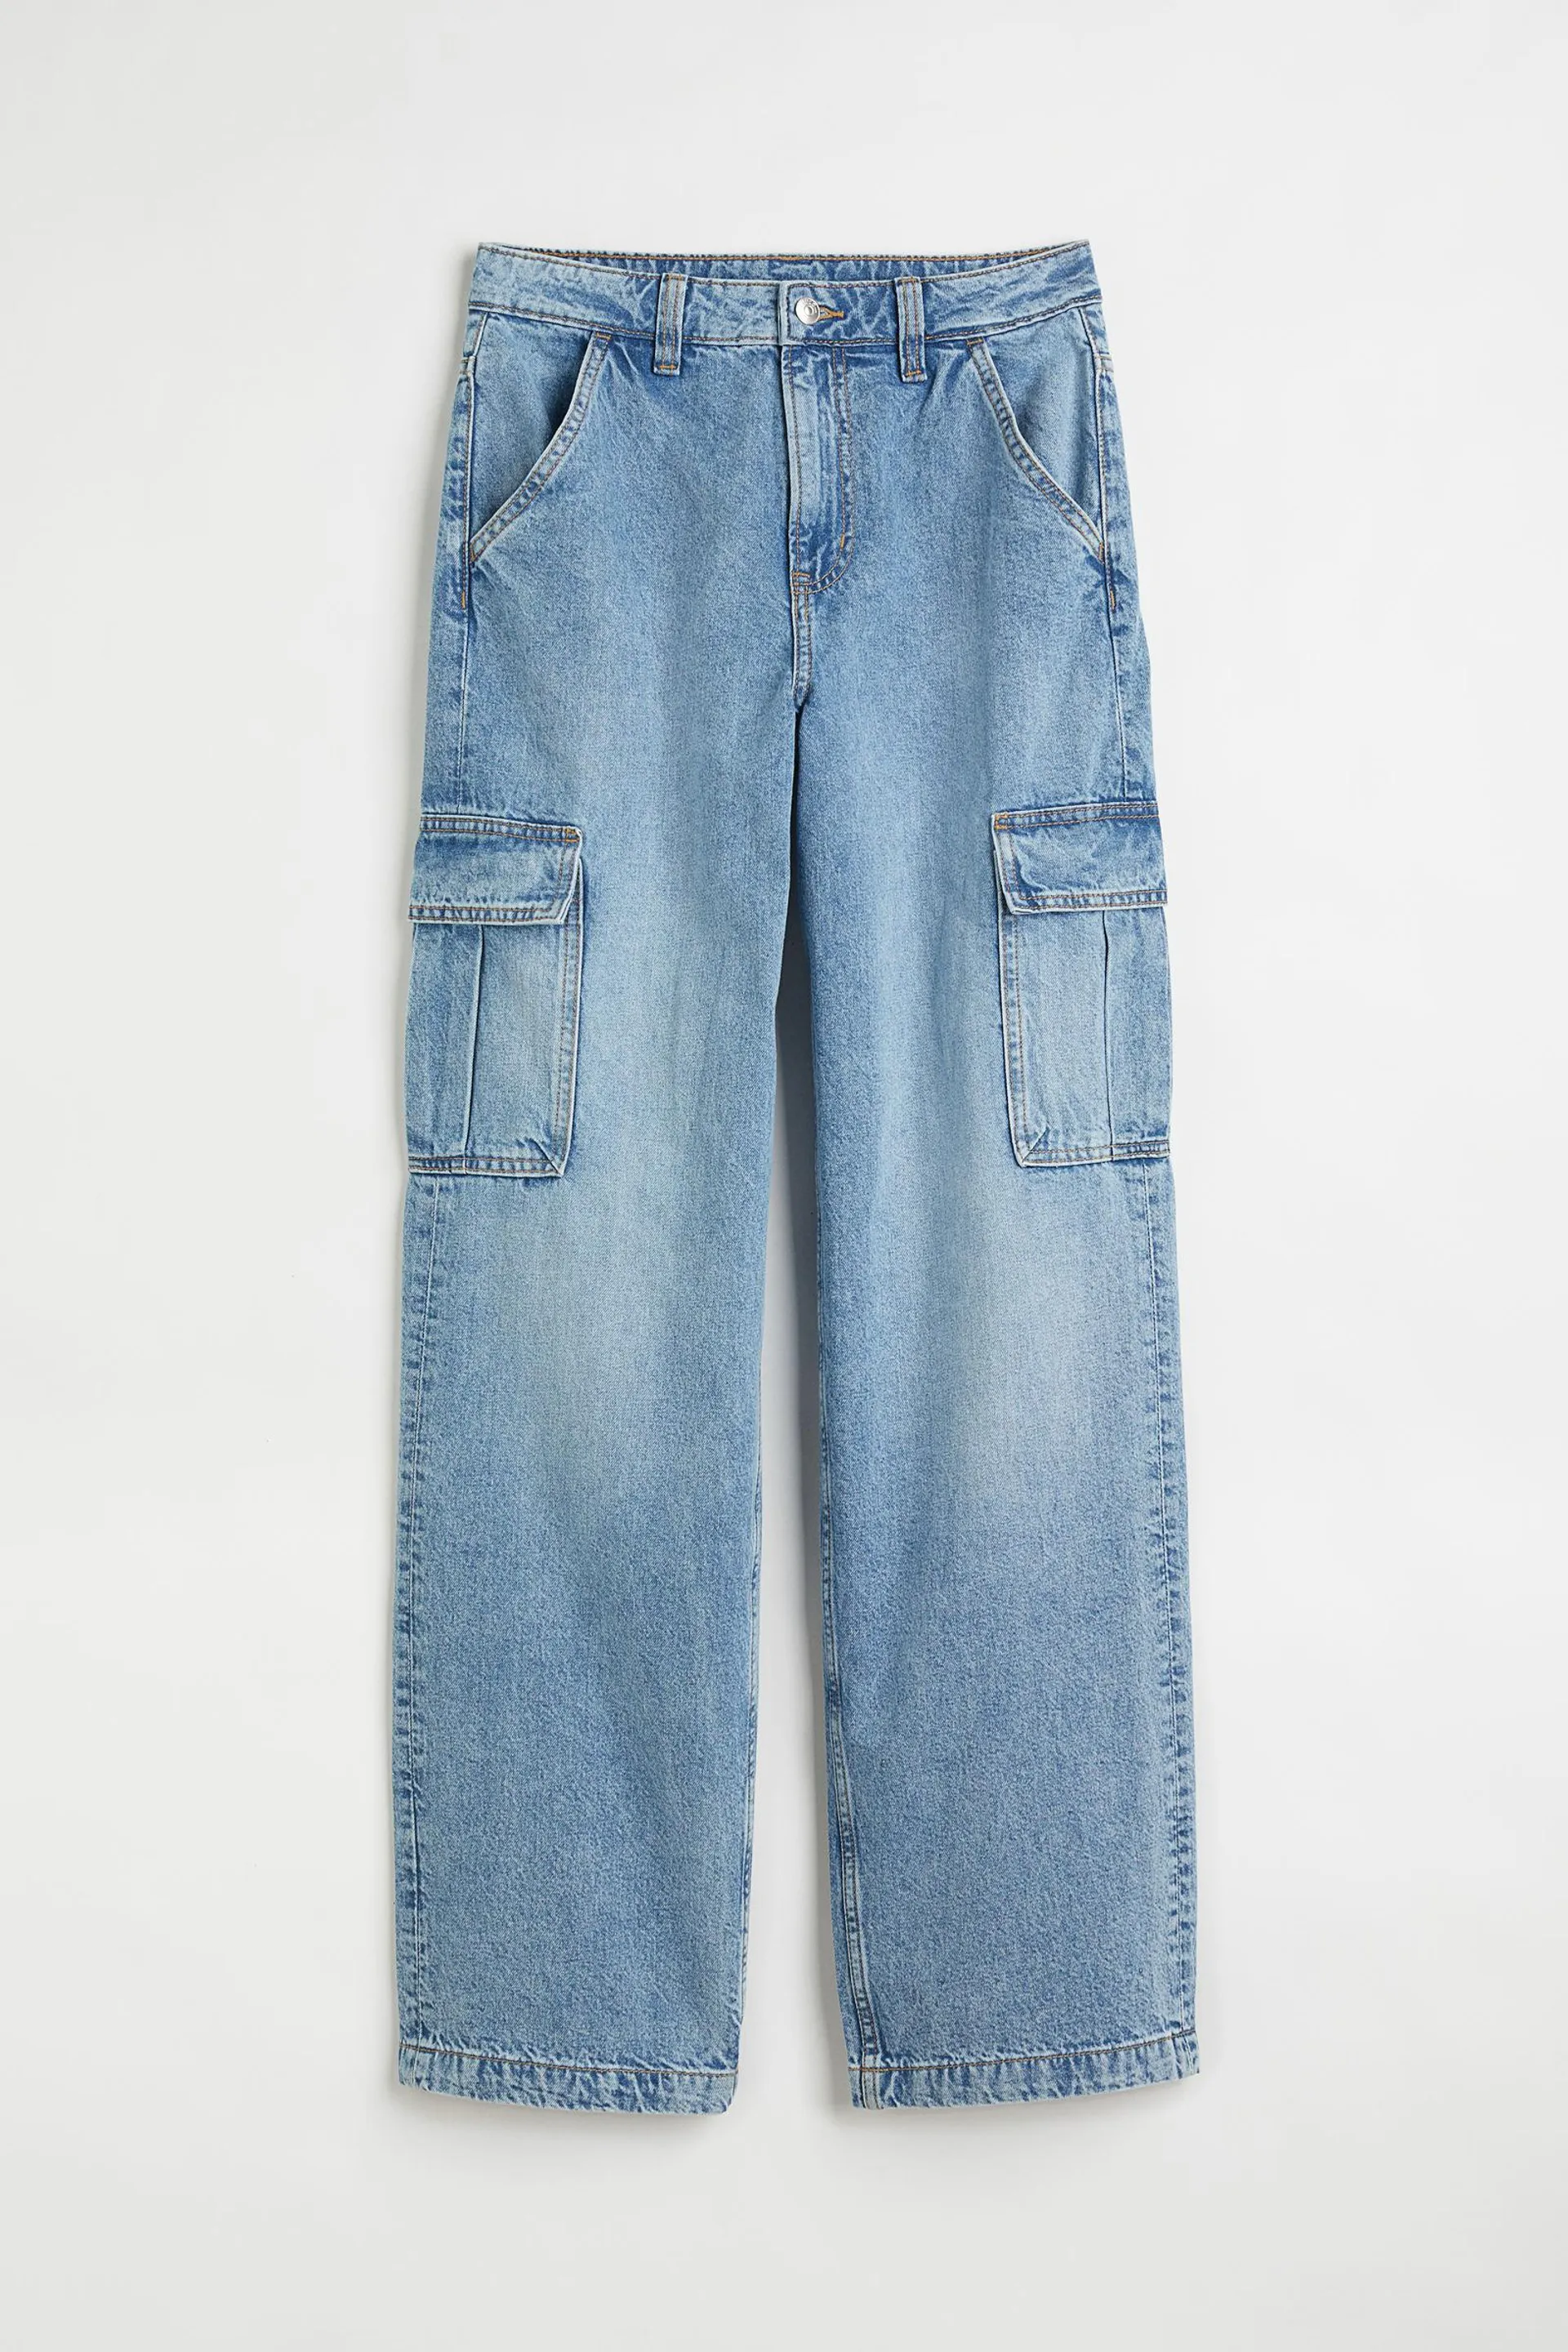 90s Baggy High Waist Jeans